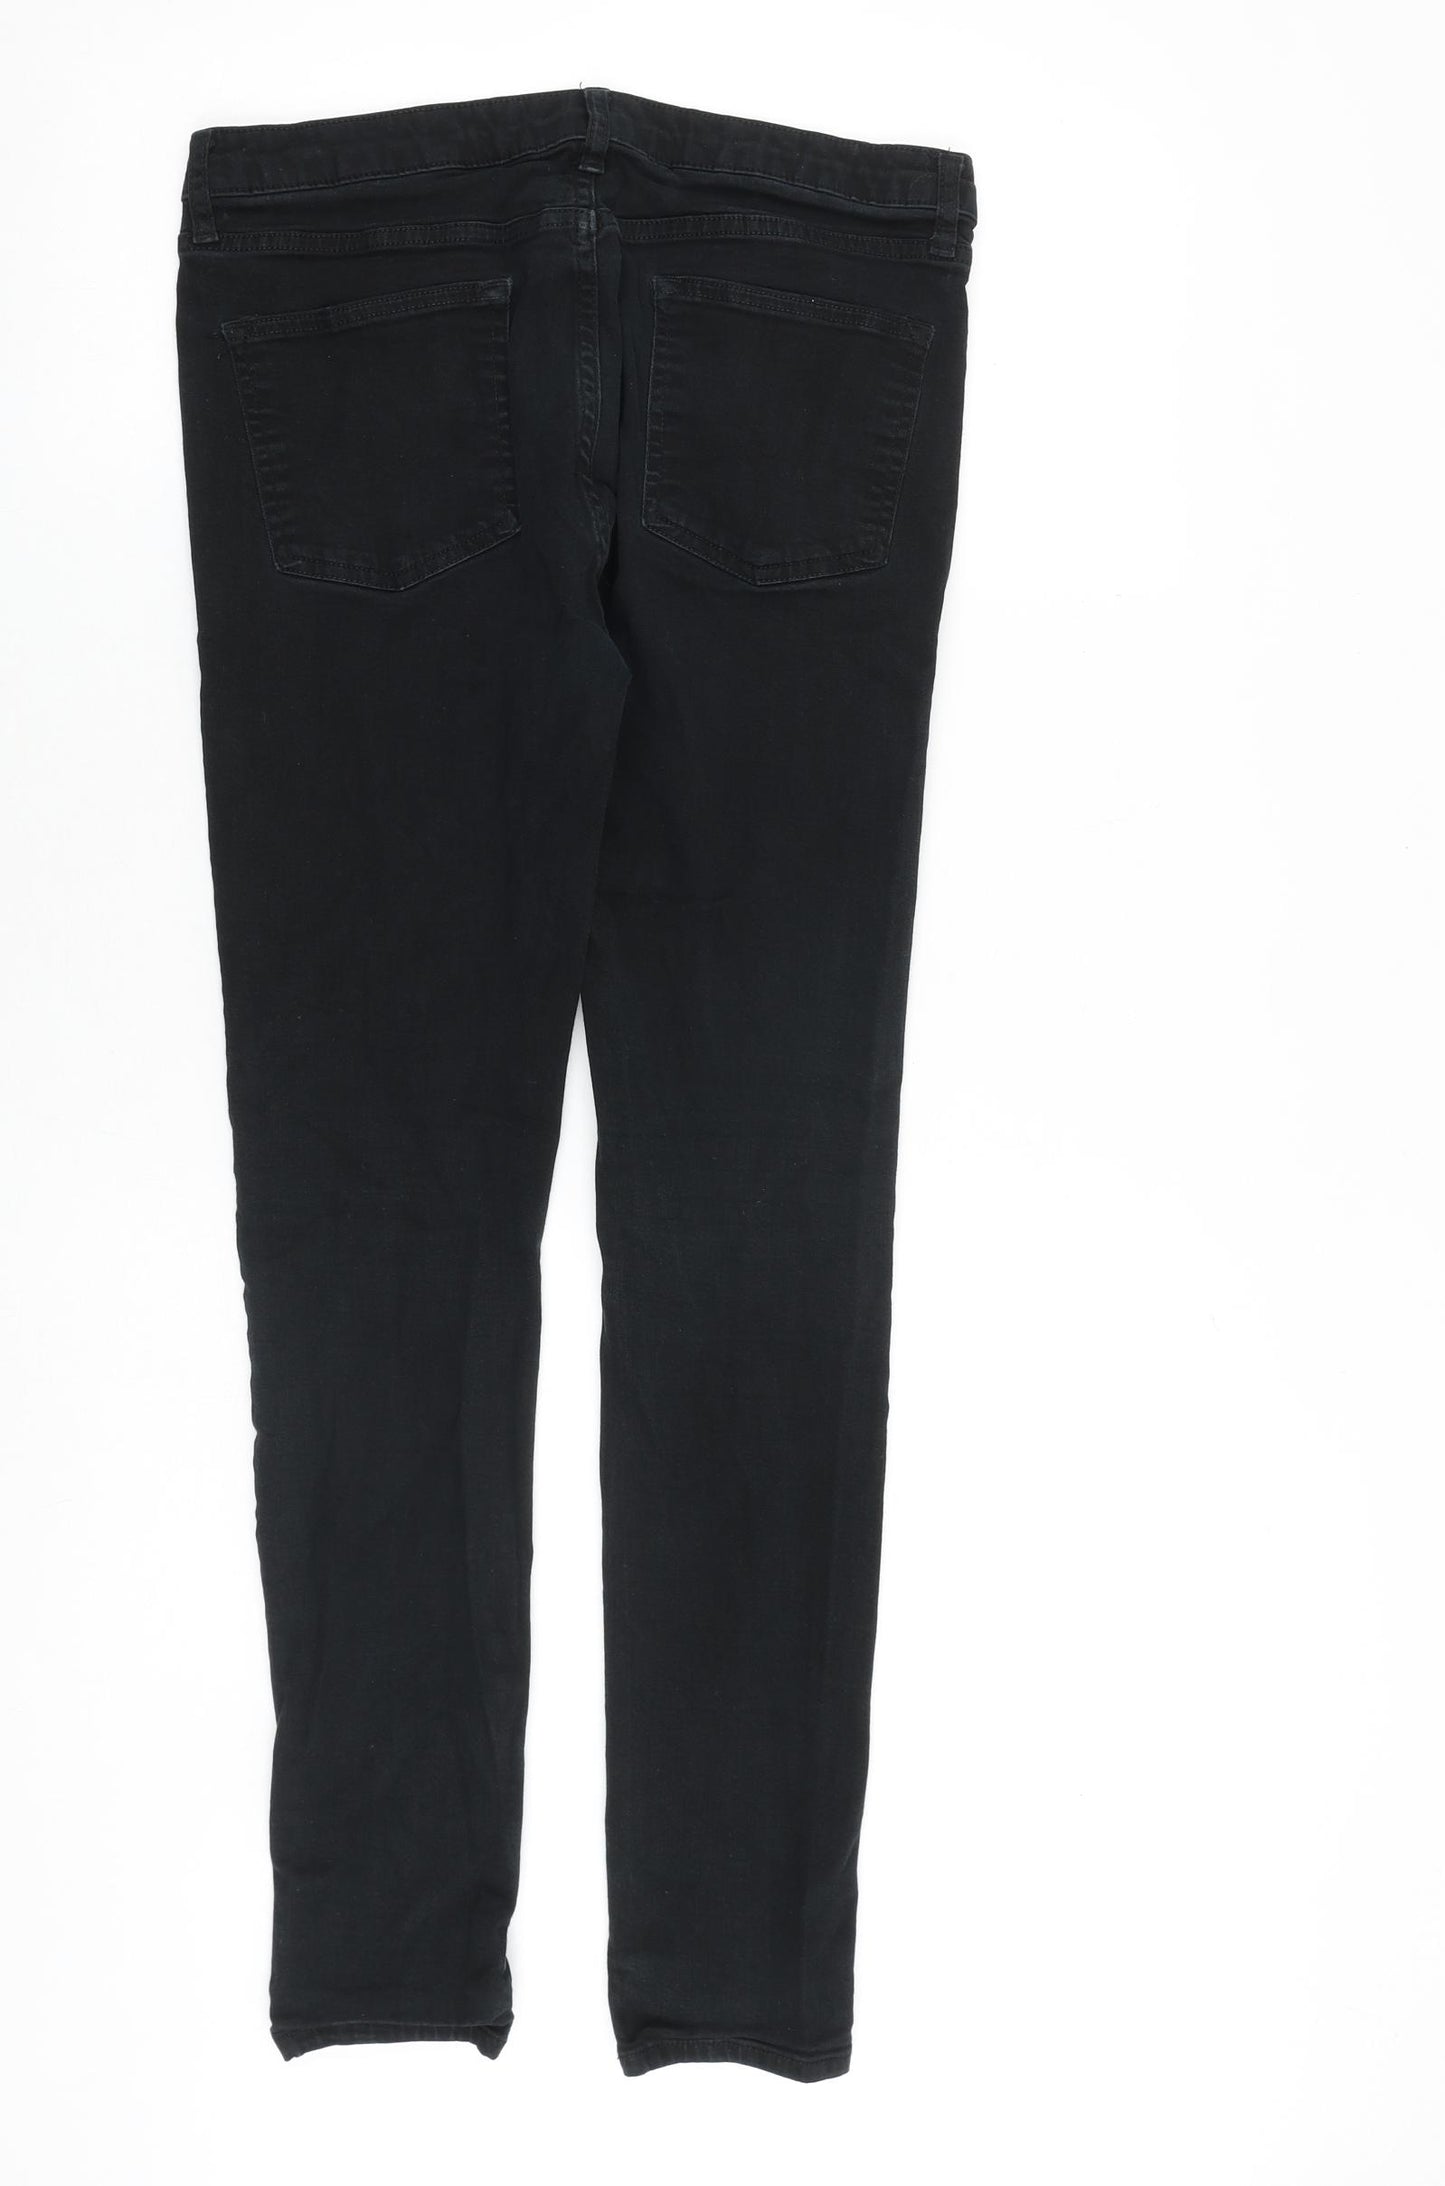 Topman Mens Black Cotton Skinny Jeans Size 34 in L34 in Slim Zip